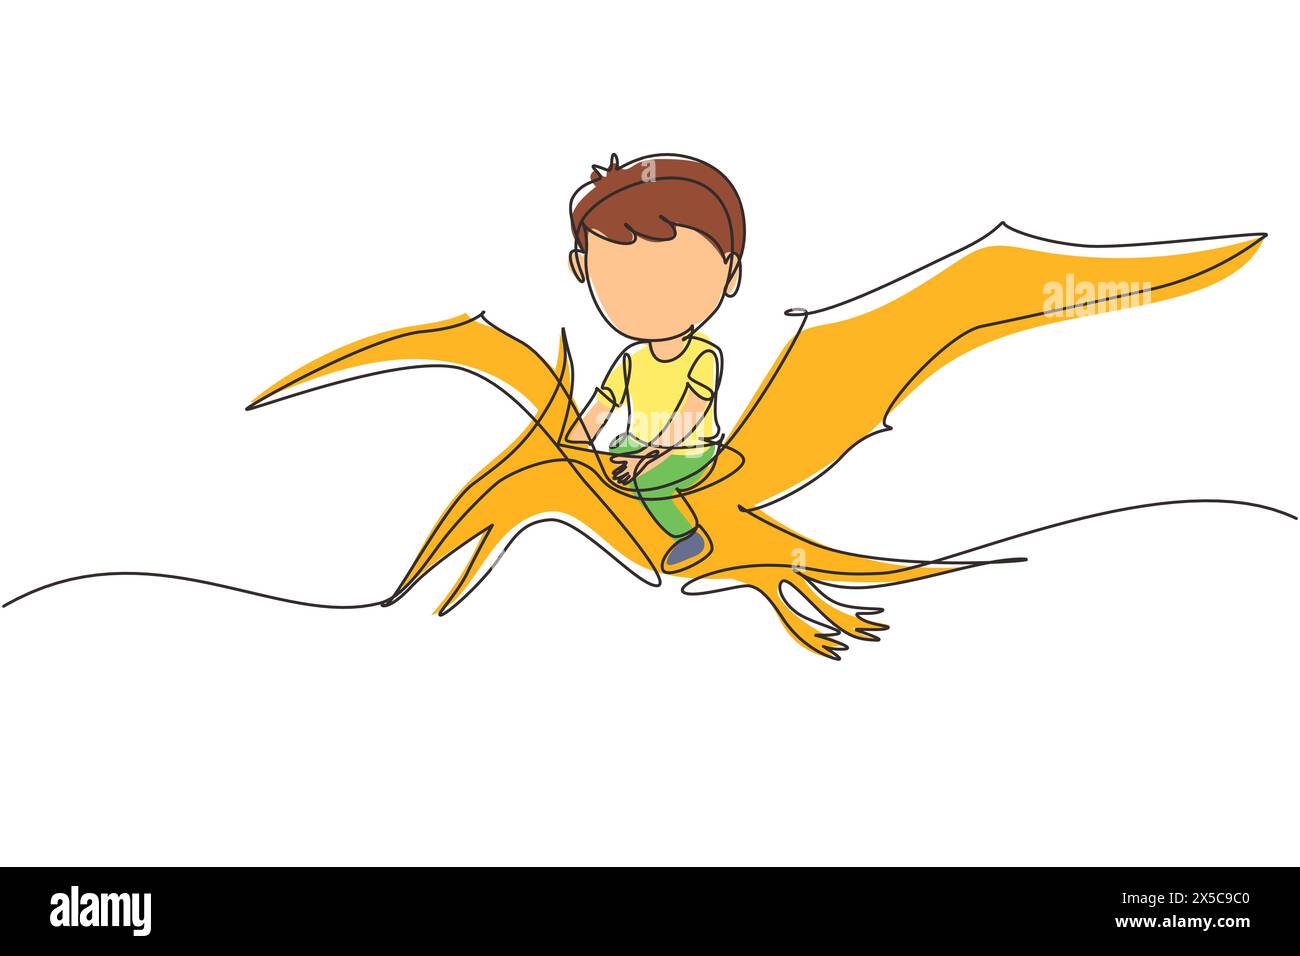 Linea singola continua che disegna ragazzo cavalcando dinosauro volante. Pterodattilo cavalca con un bambino seduto sul retro del dinosauro e volando in alto nel cielo. Dinamica Illustrazione Vettoriale